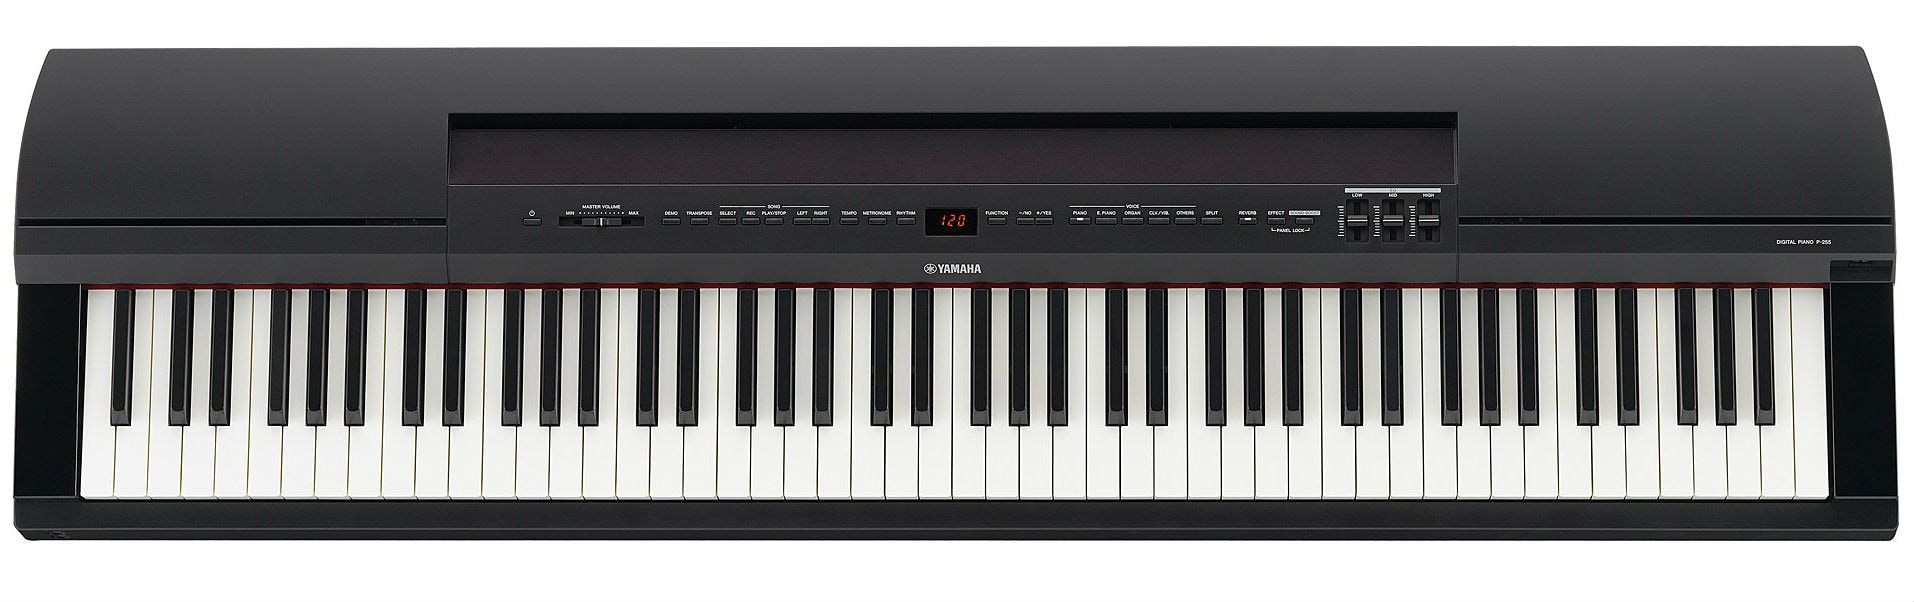 YAMAHA P-255B цифровое пианино 88 клавиш